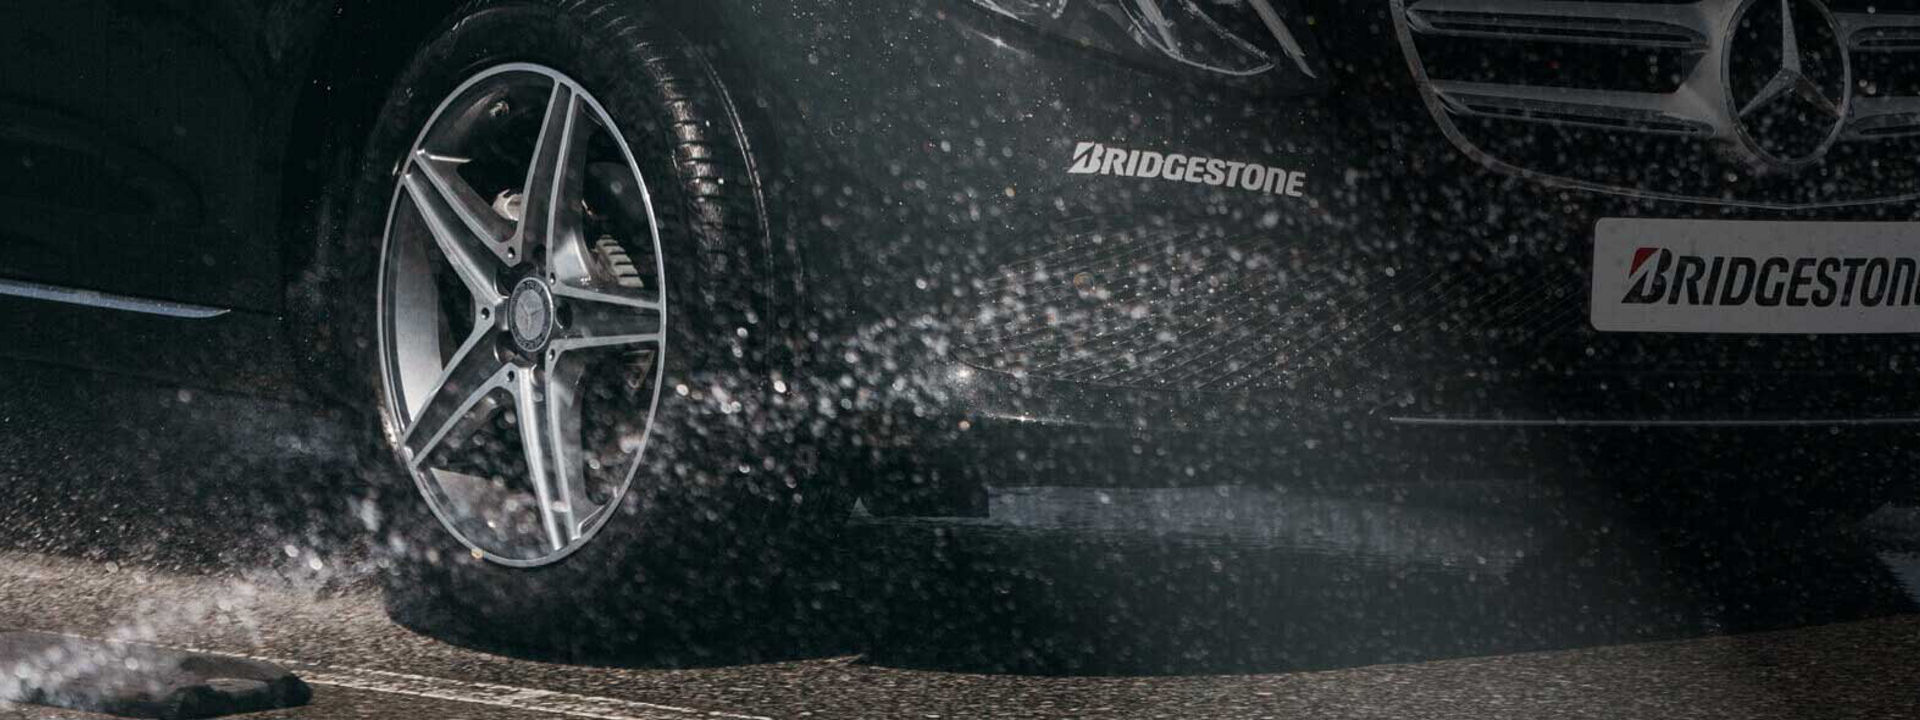 Bližnji posnetek pnevmatike Bridgestone Turanza pri vožnji na mokri podlagi